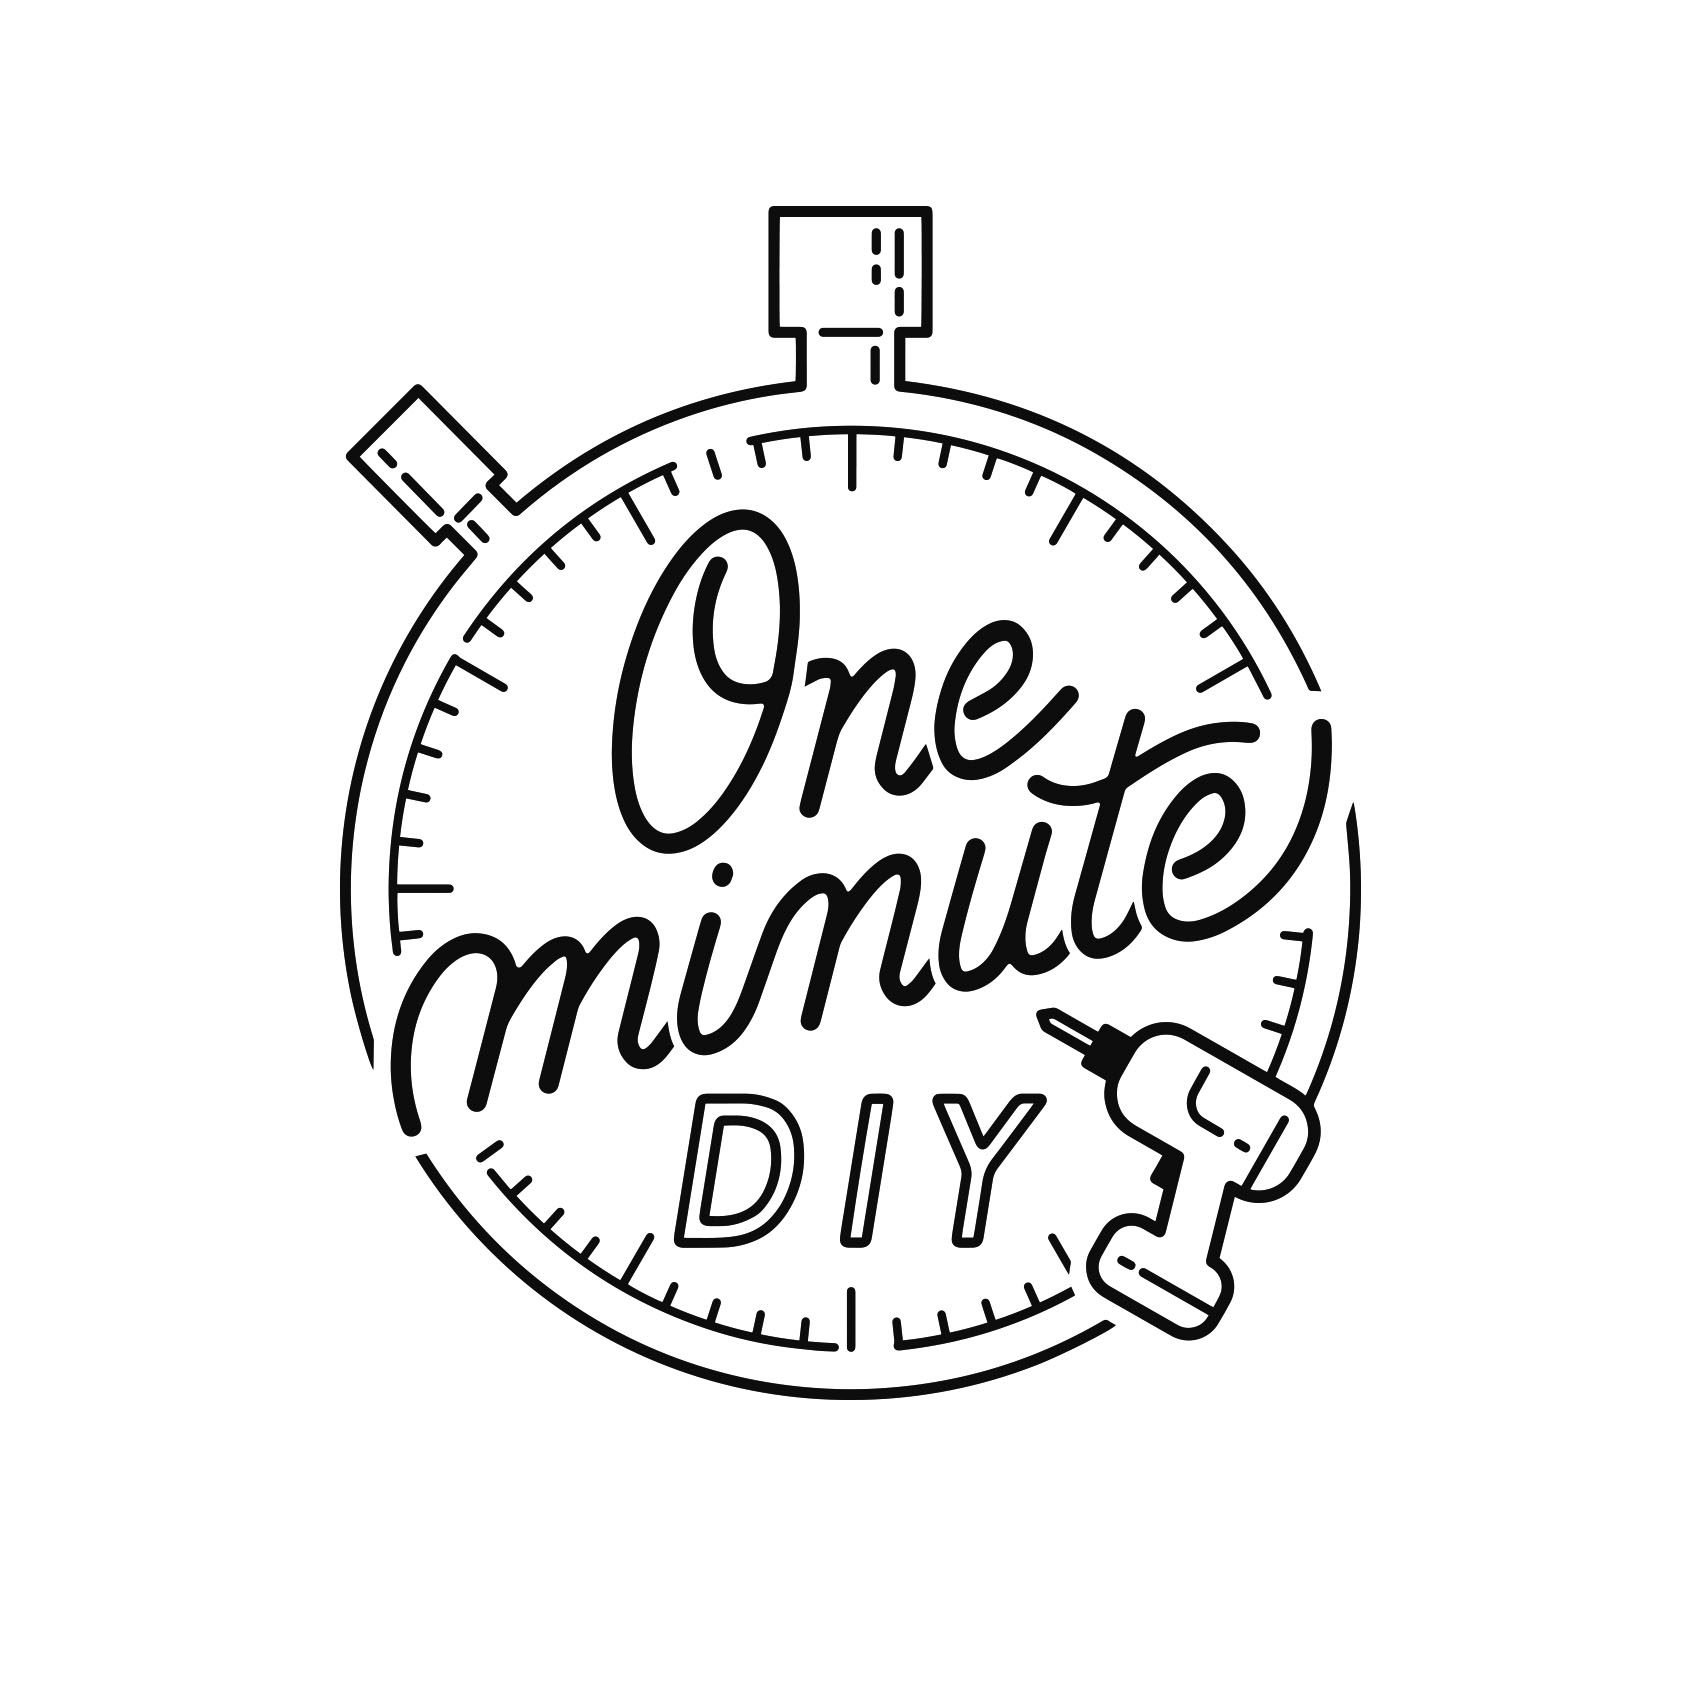 グッデイ One Minute Diy ロゴデザイン Illust Design Napsac 福岡のイラスト デザイン制作所